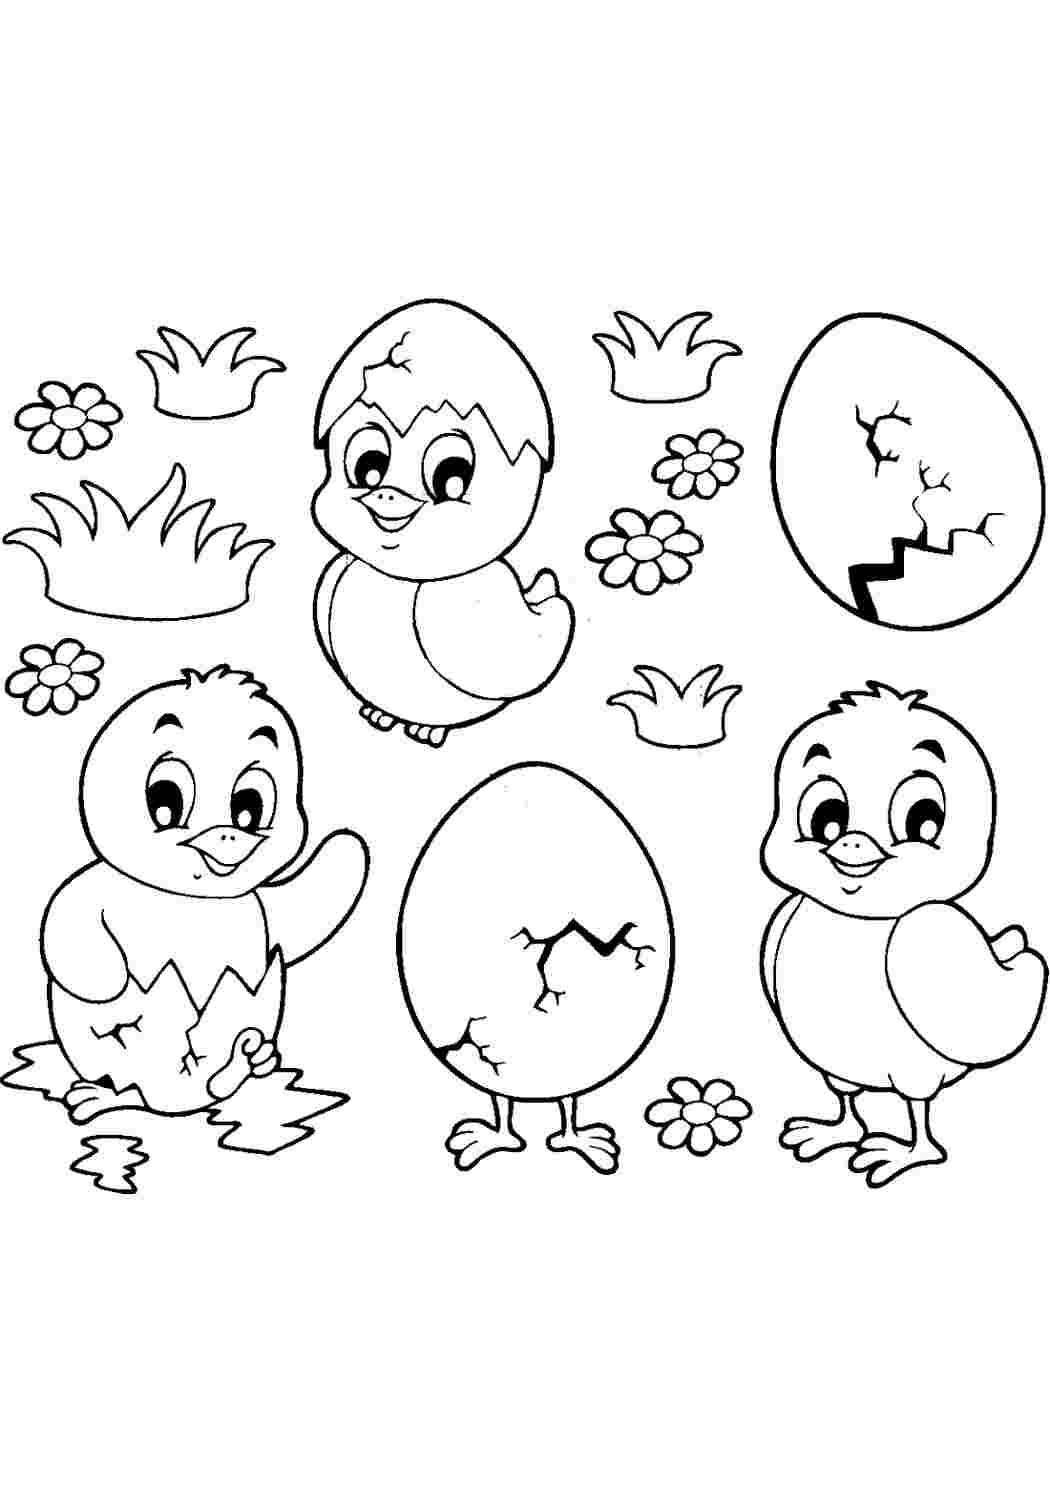 Птенцы в яйцах. Хорошие раскраски.